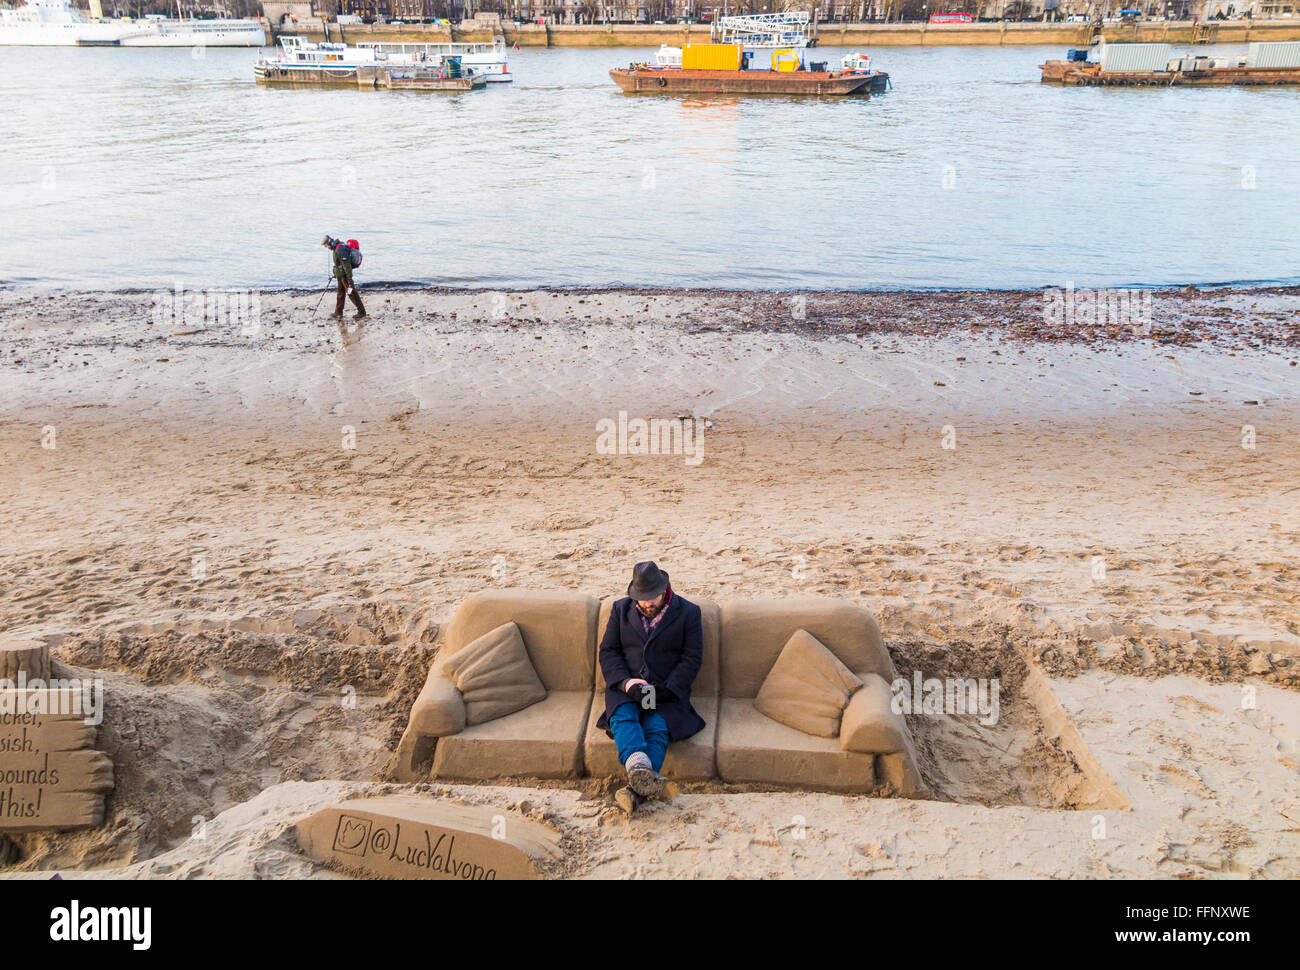 Scultore seduto su un divano di sabbia scultura lungo gli argini del fiume Thames, London a bassa marea Foto Stock